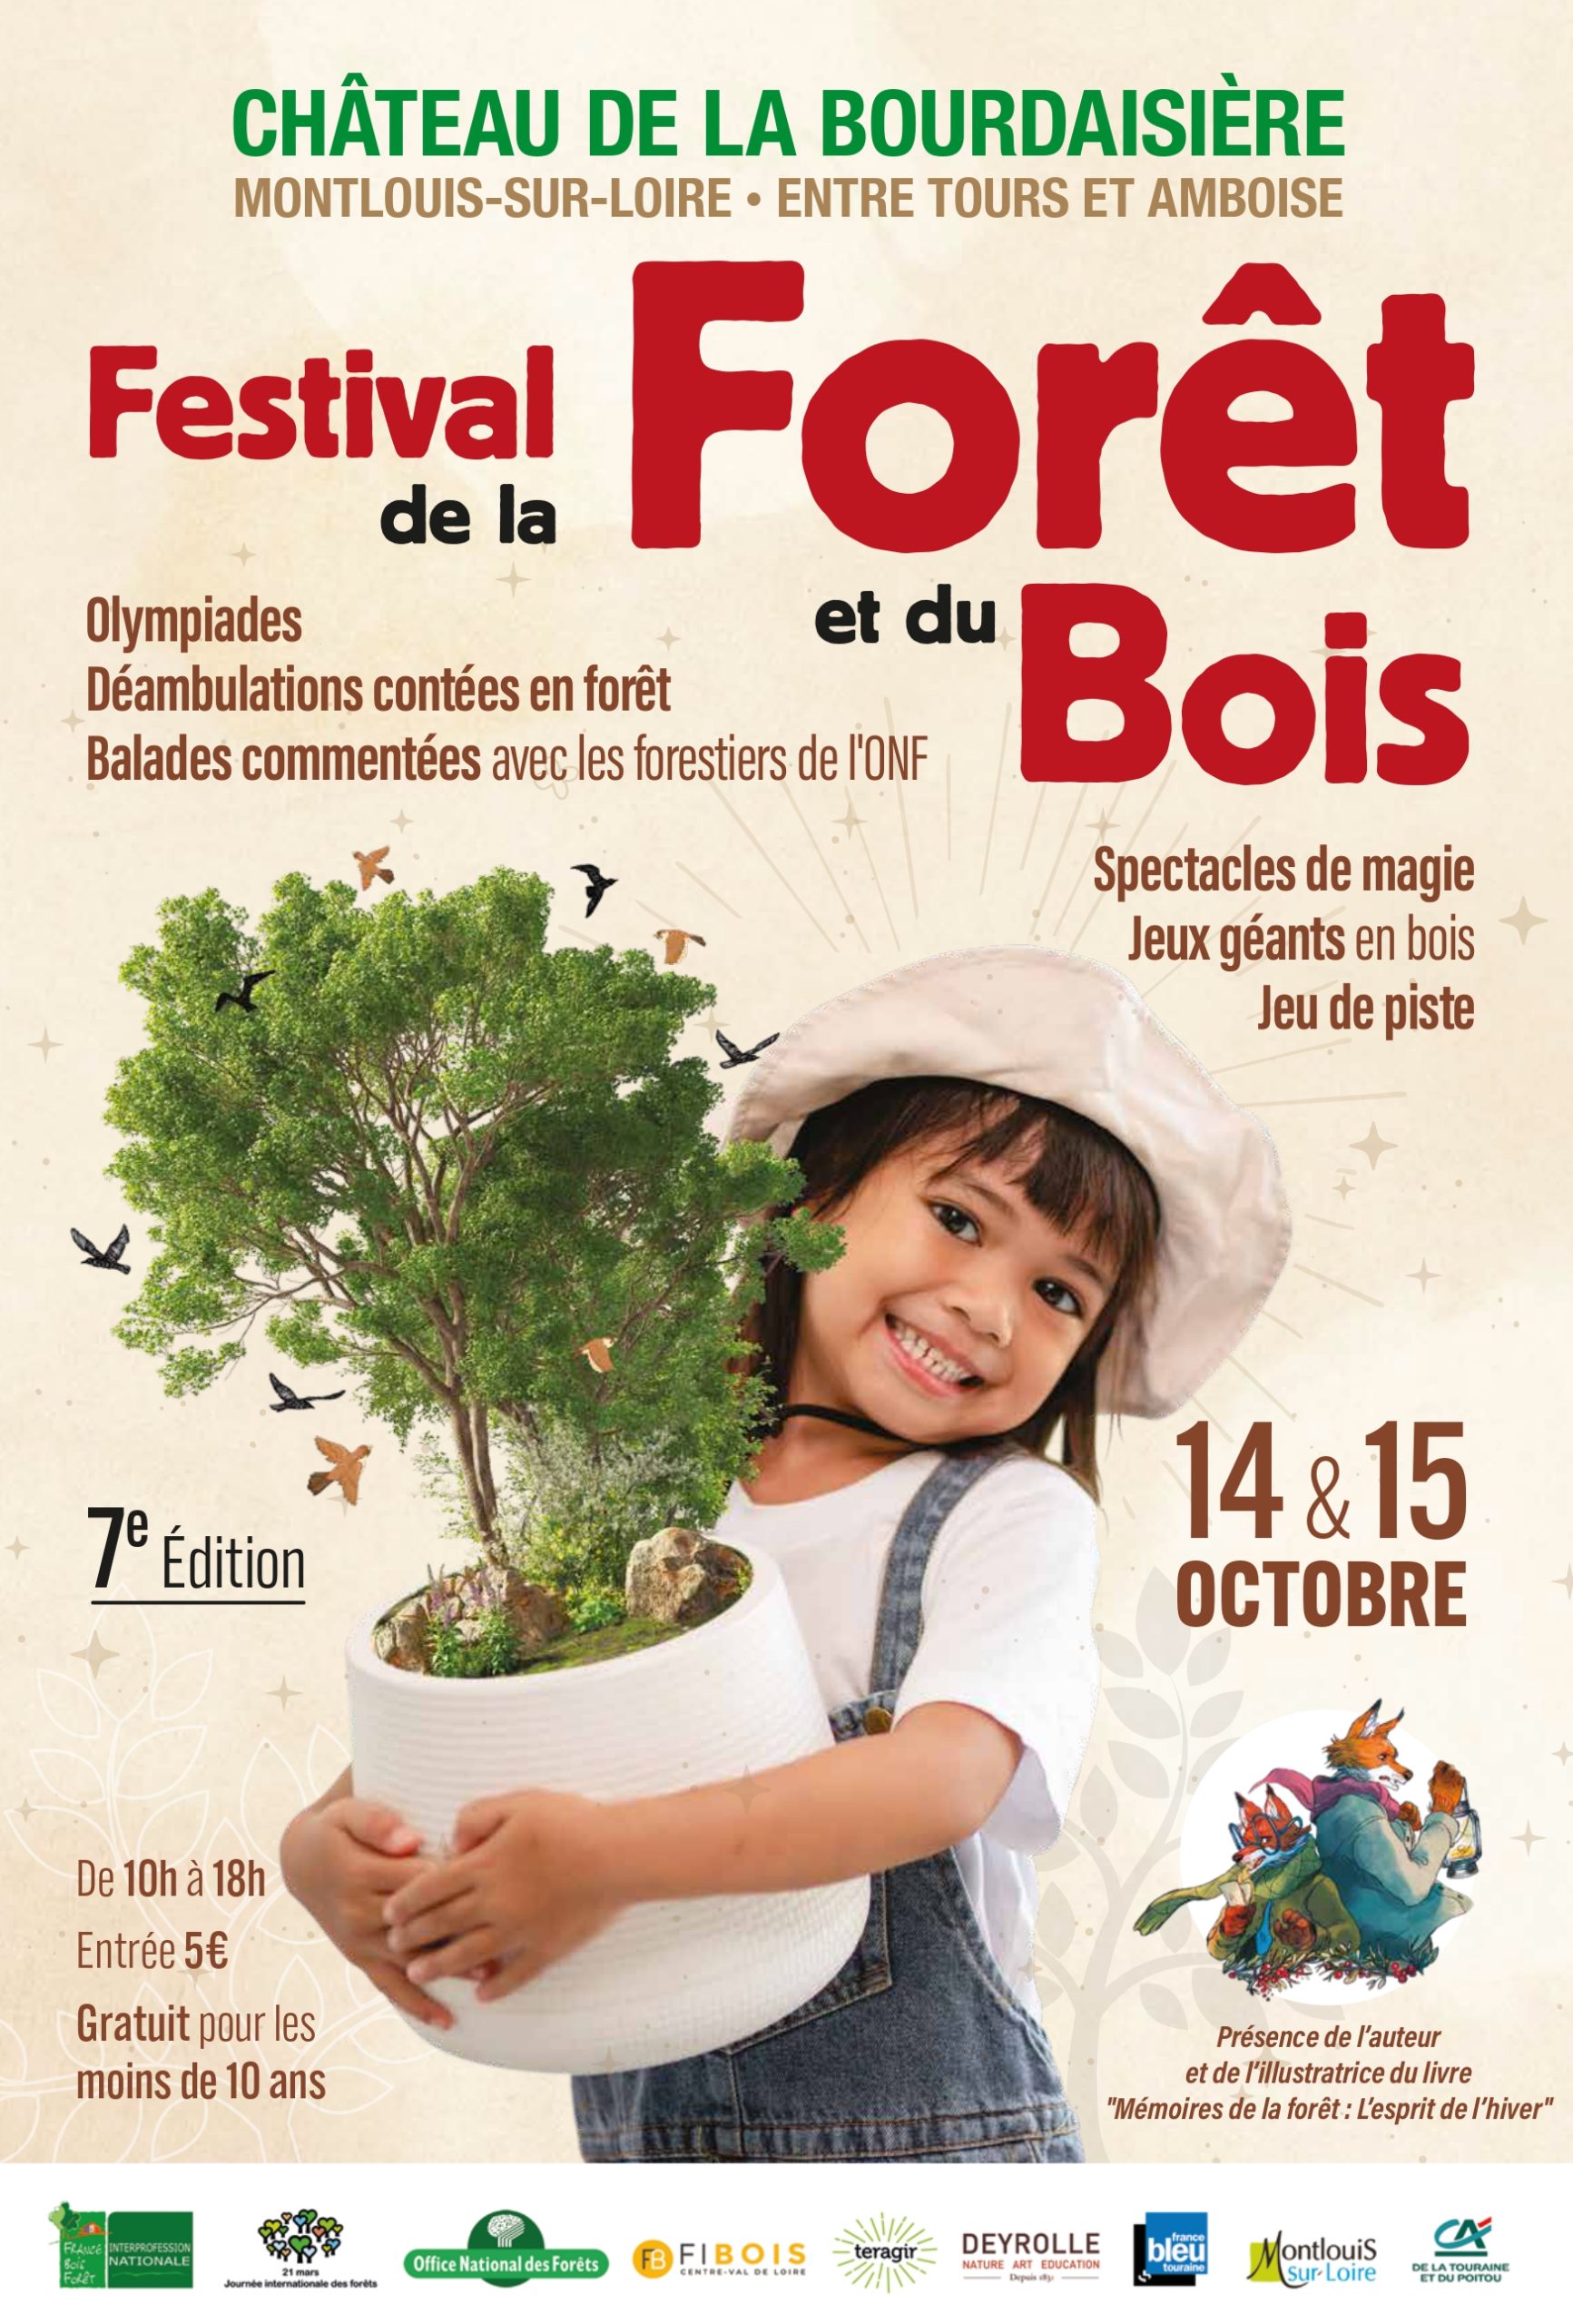 Festival de la Forêt et du Bois - Château Hôtel de la Bourdaisière